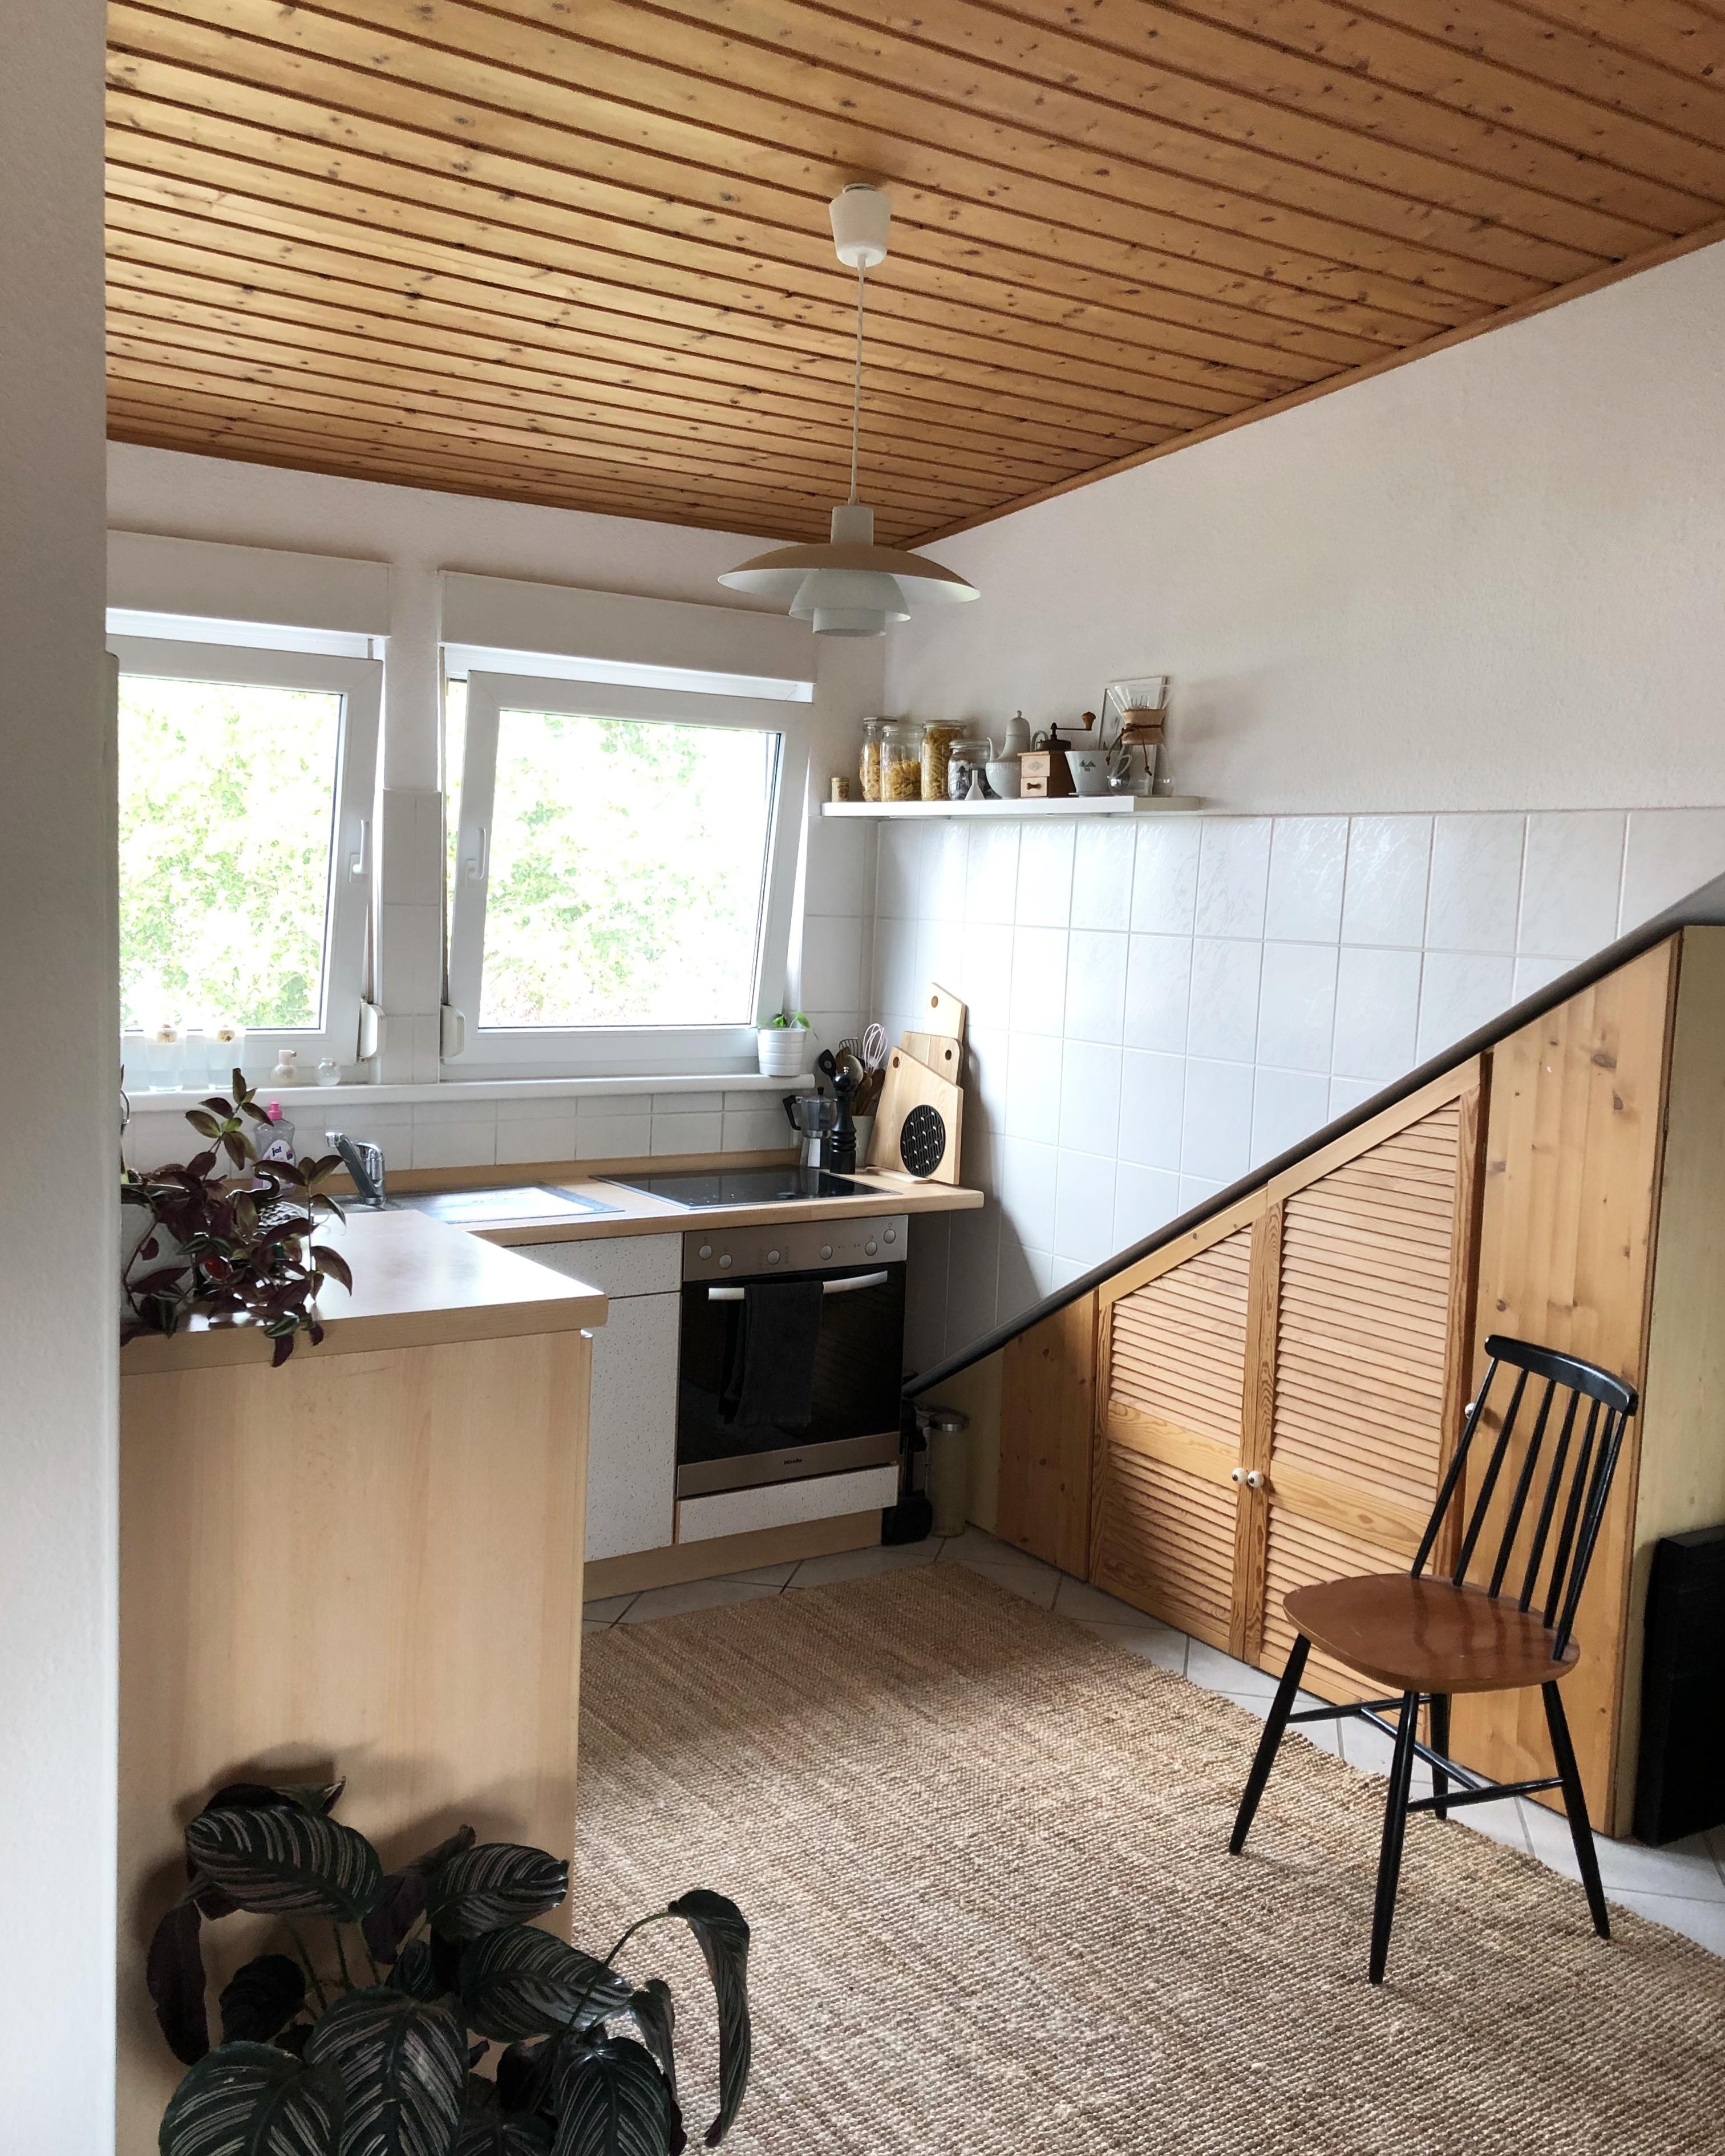 Bisher noch nicht richtig gezeigt meine kleine feine Küche ☺️

#kitchen #louispoulsen #kleinaberfein 